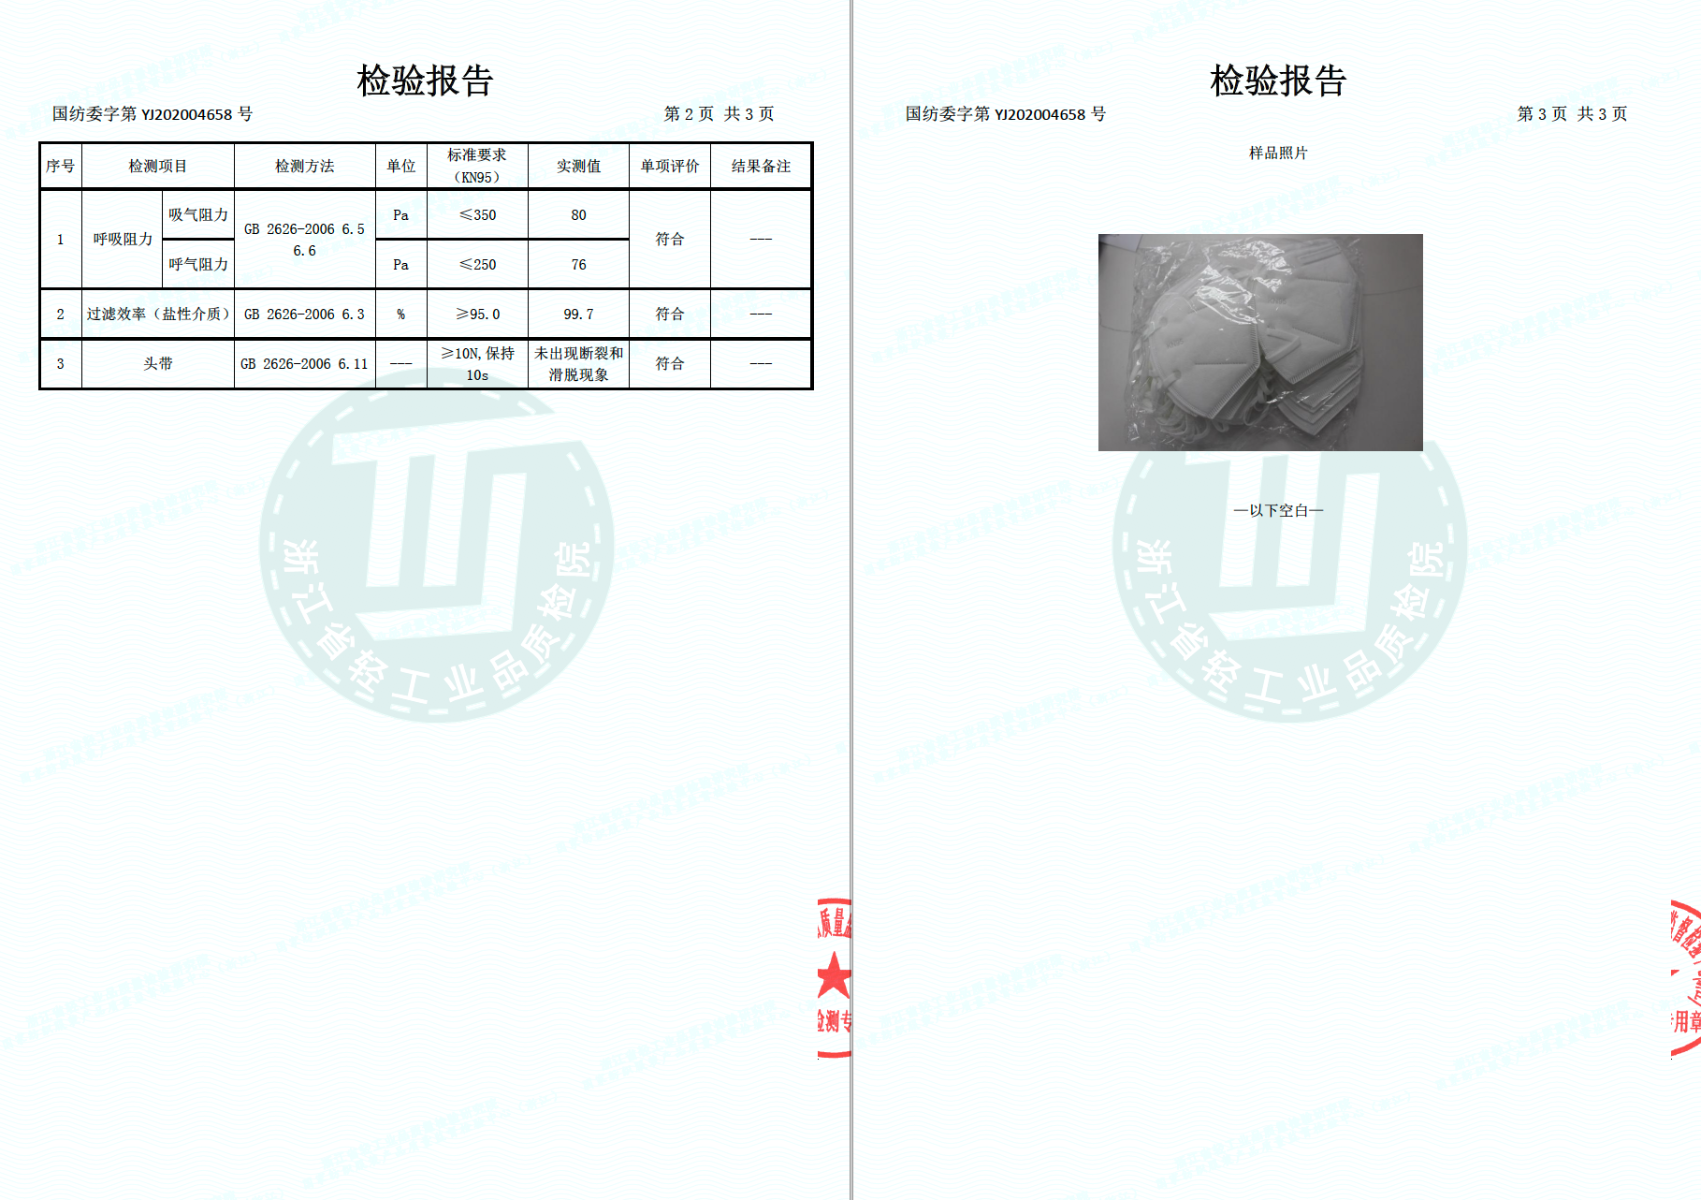 Test Report - Henghao -2